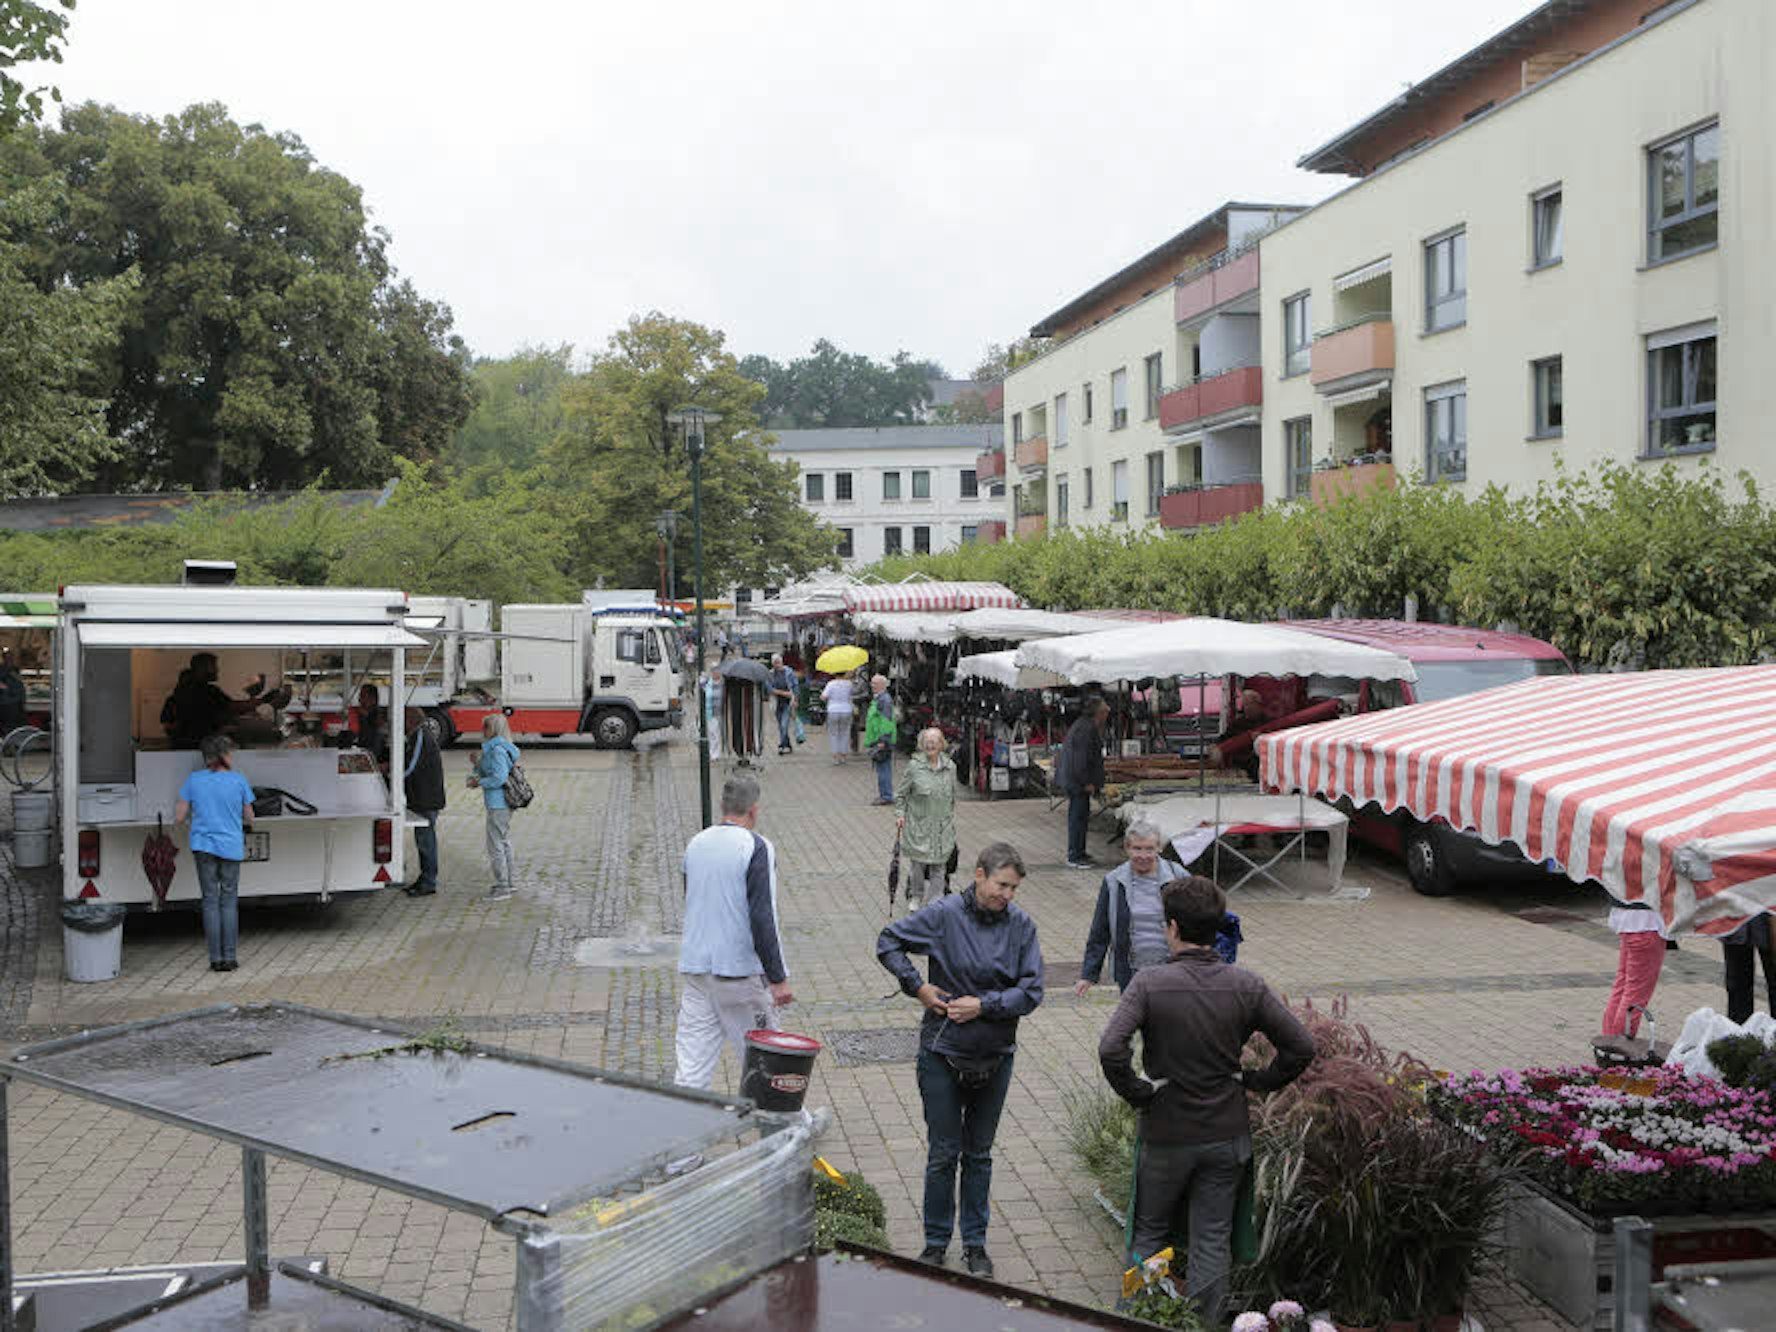 Eng geht es für die Markthändler am neuen Standort Haumannsplatz zu.